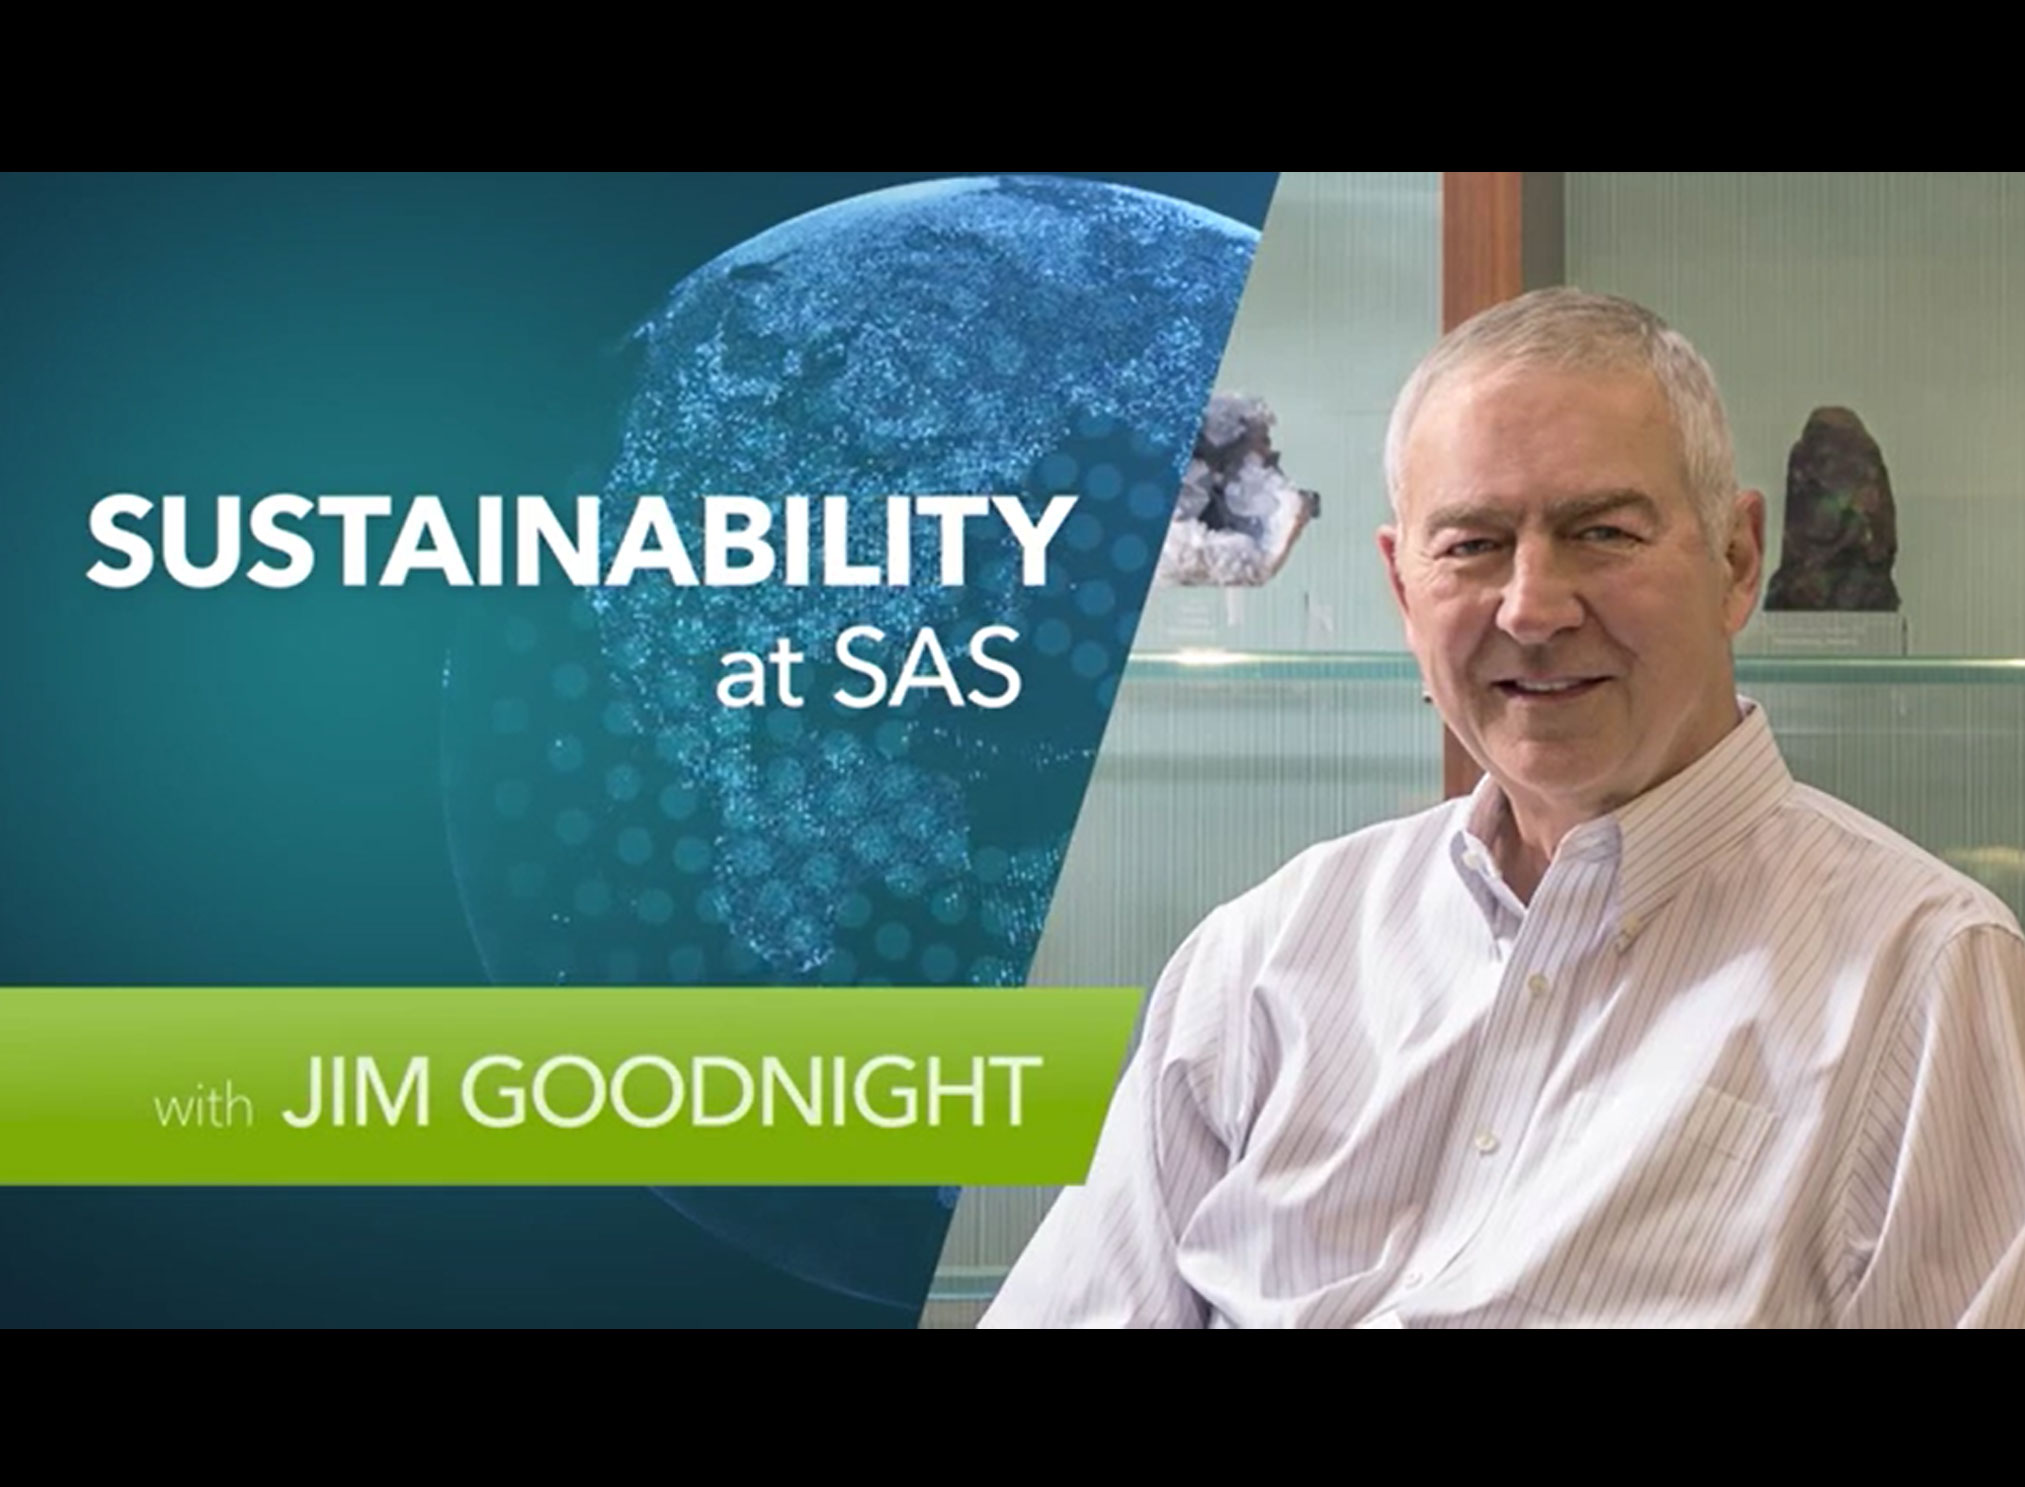 SAS CEO Jim Goodnight shares the company’s sustainability initiatives.